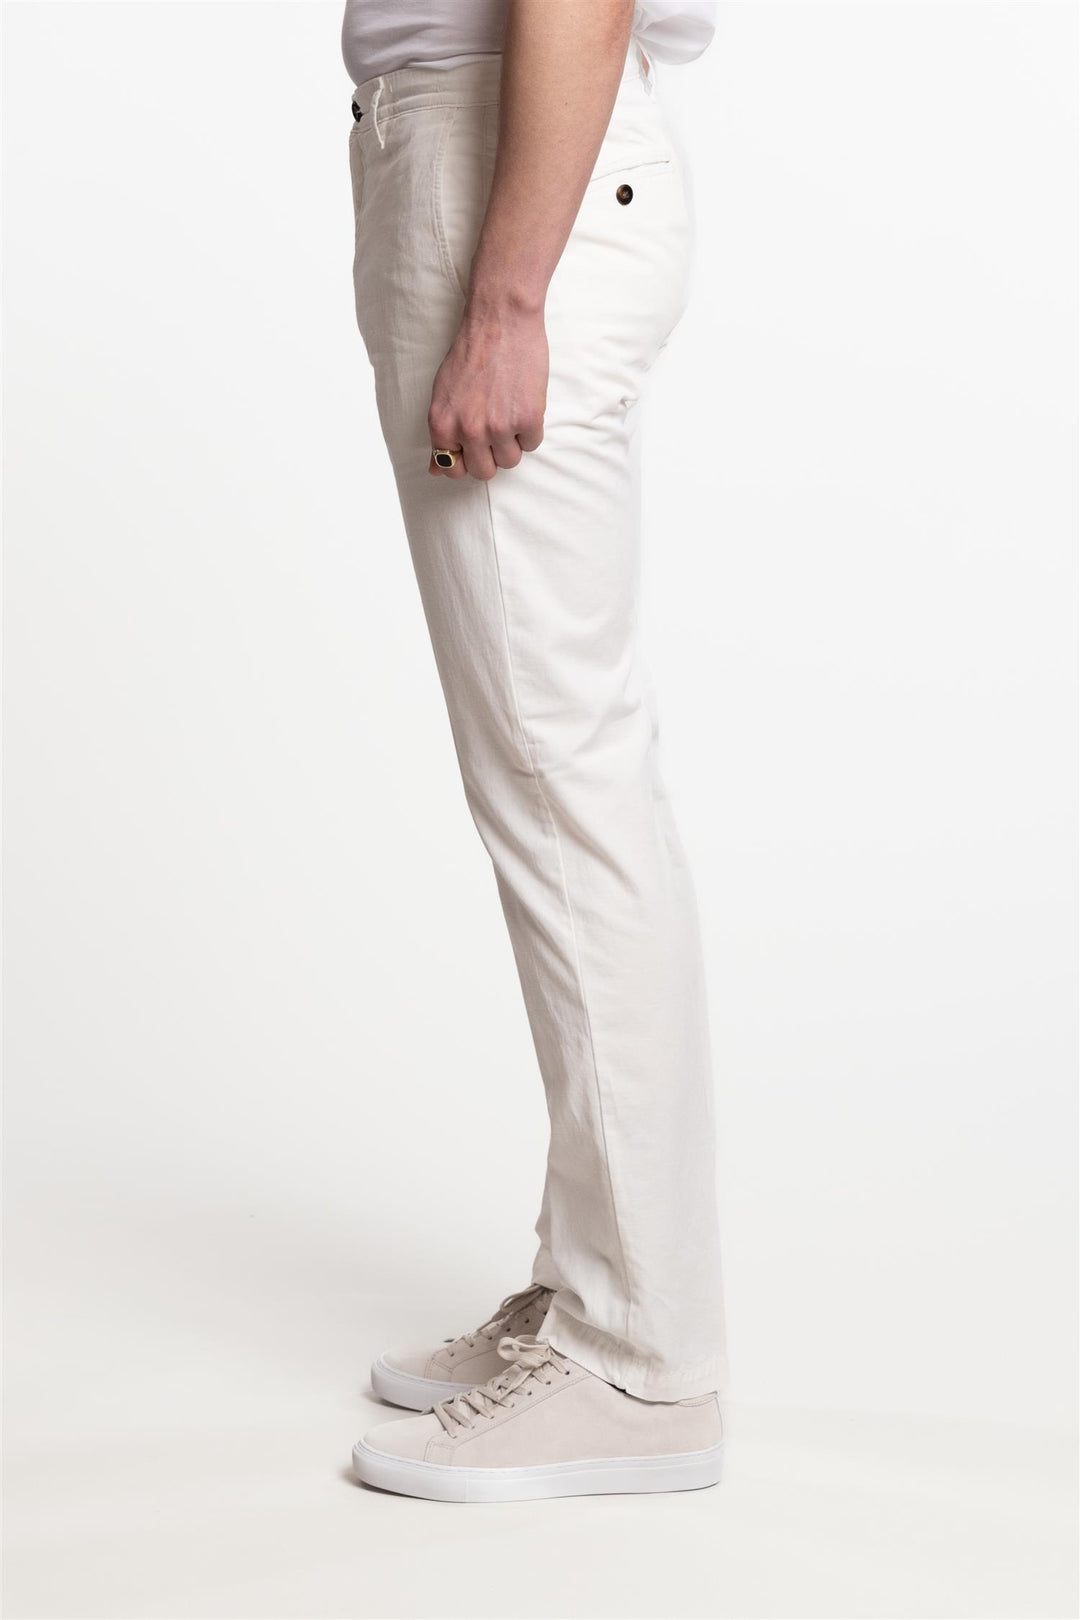 Cagliari Cotton/Stretch Pant White